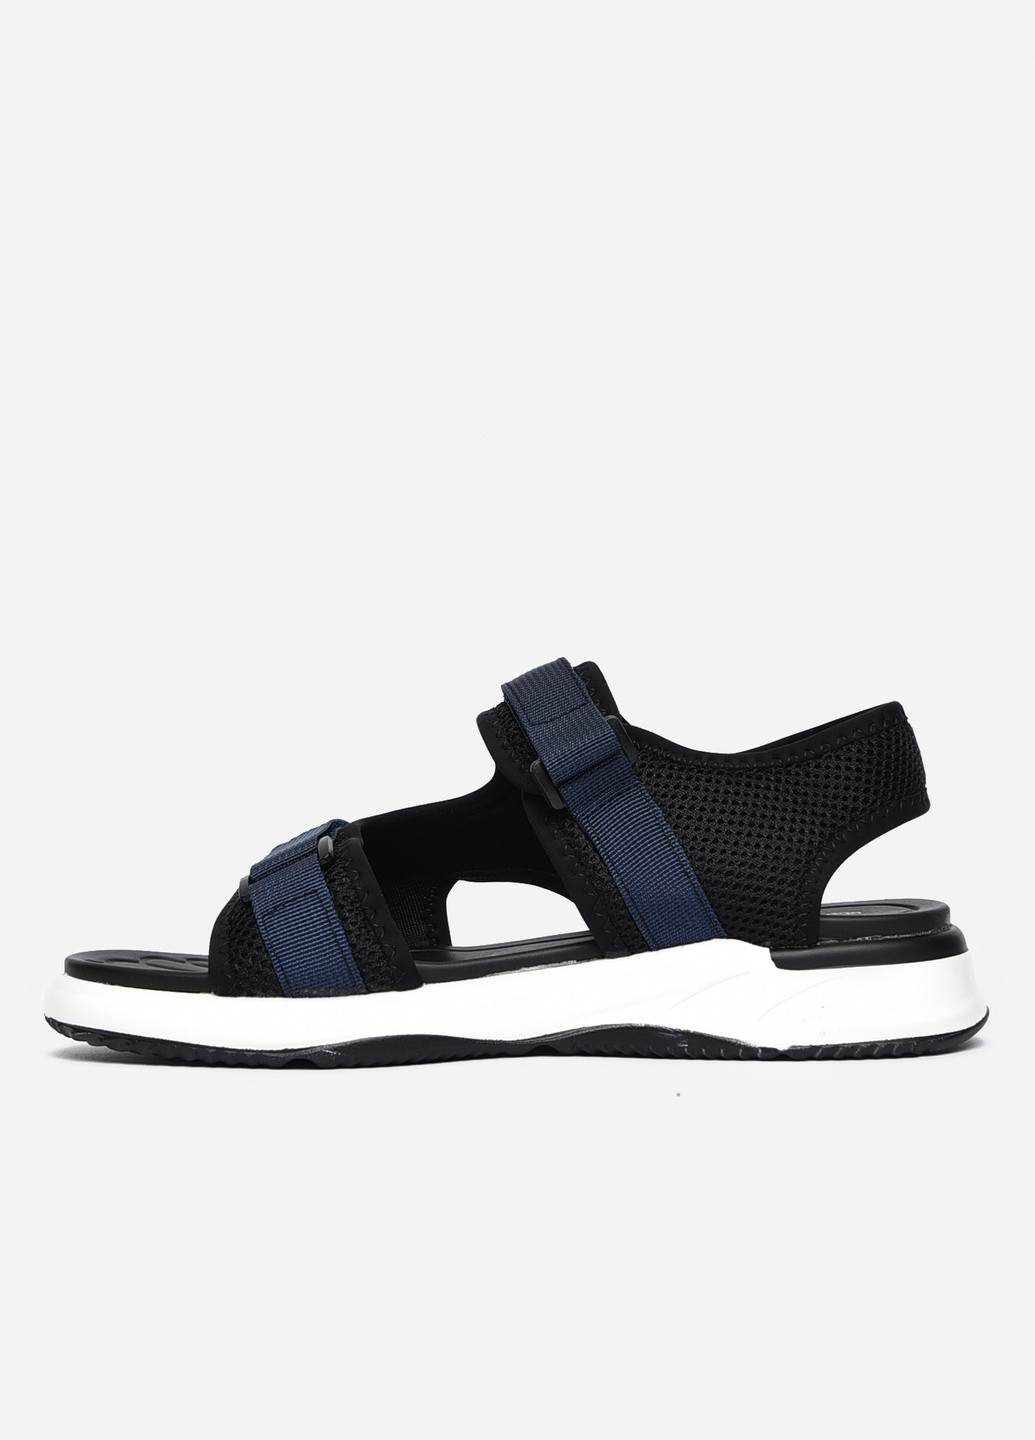 Пляжные сандалии мужские чорно-синего цвета текстиль Let's Shop